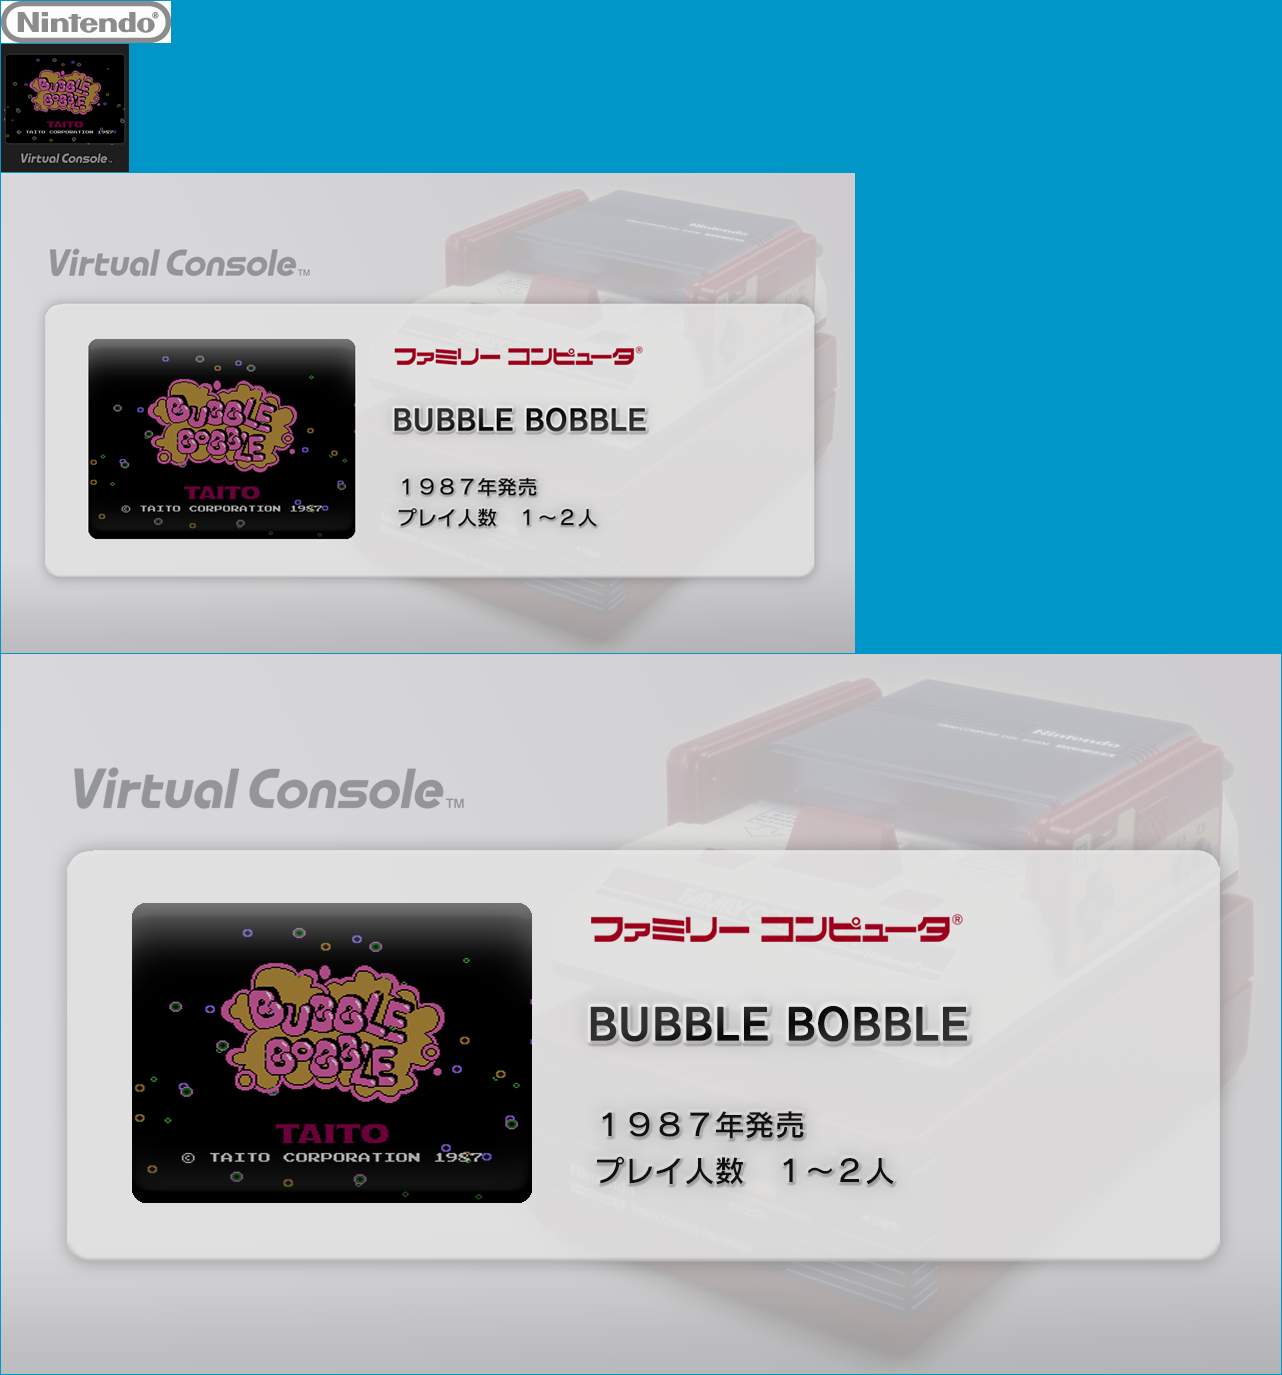 Virtual Console - BUBBLE BOBBLE